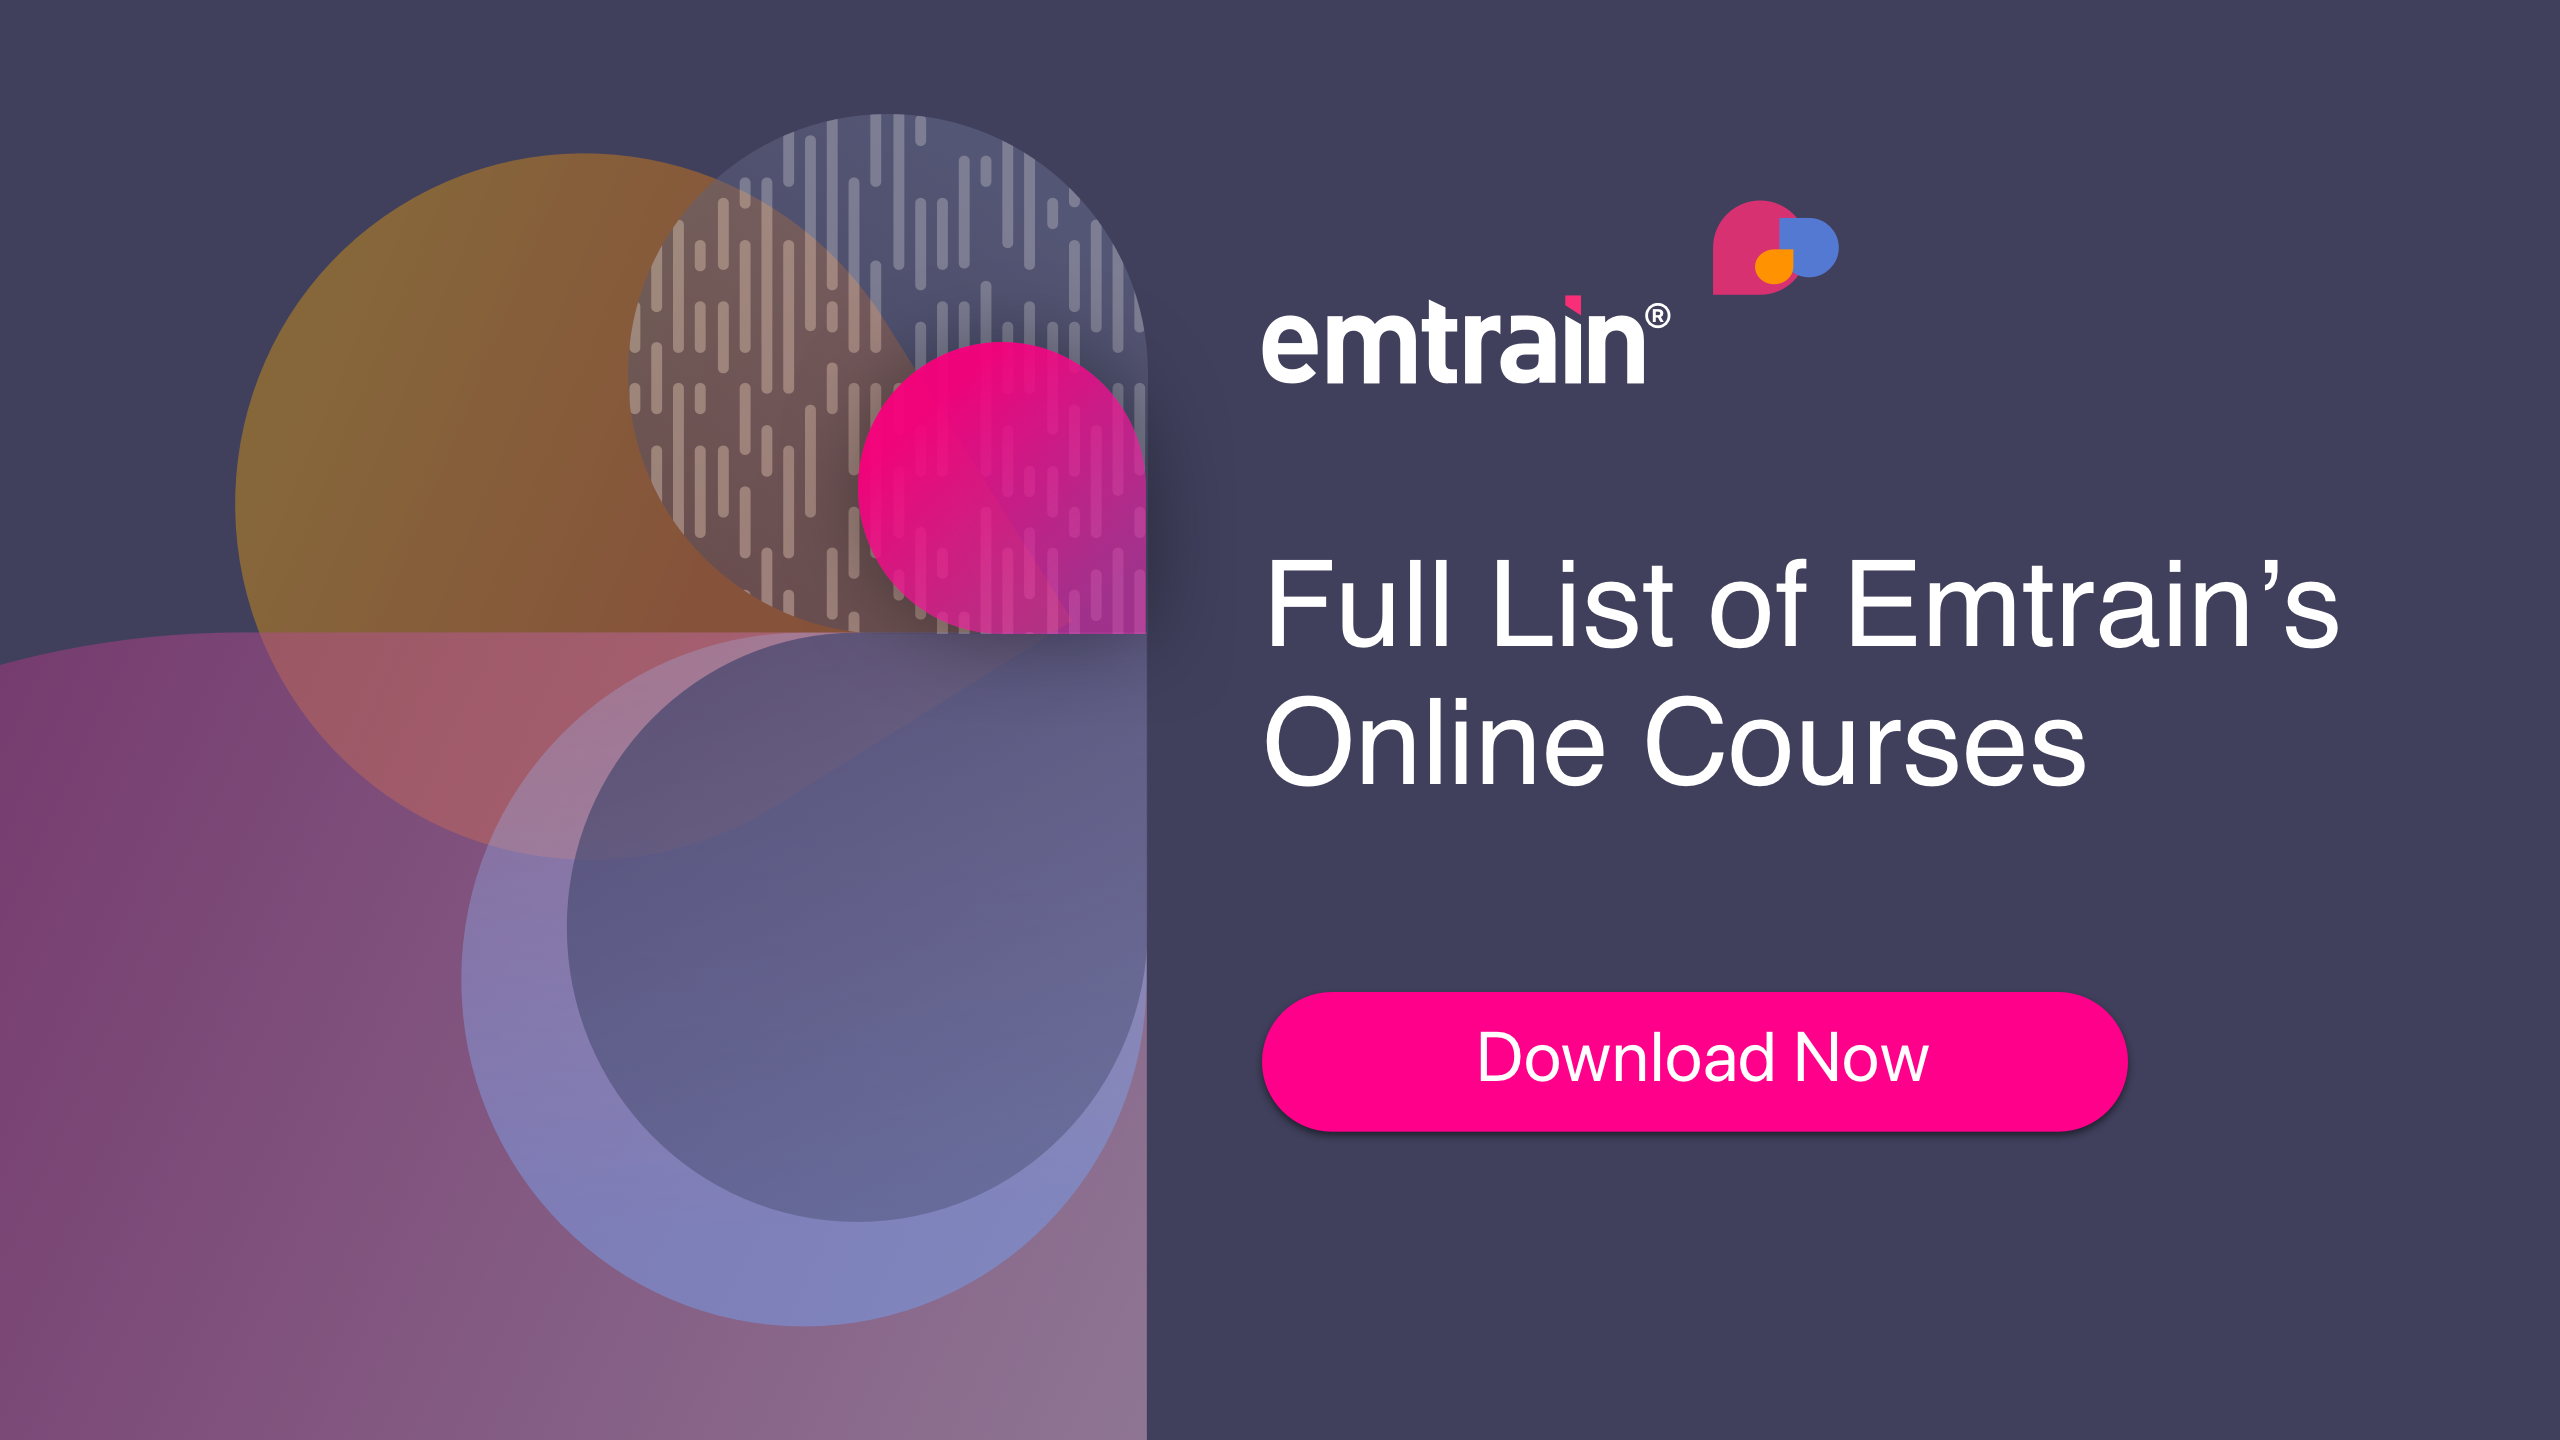 Full List of Emtrain’s Online Courses